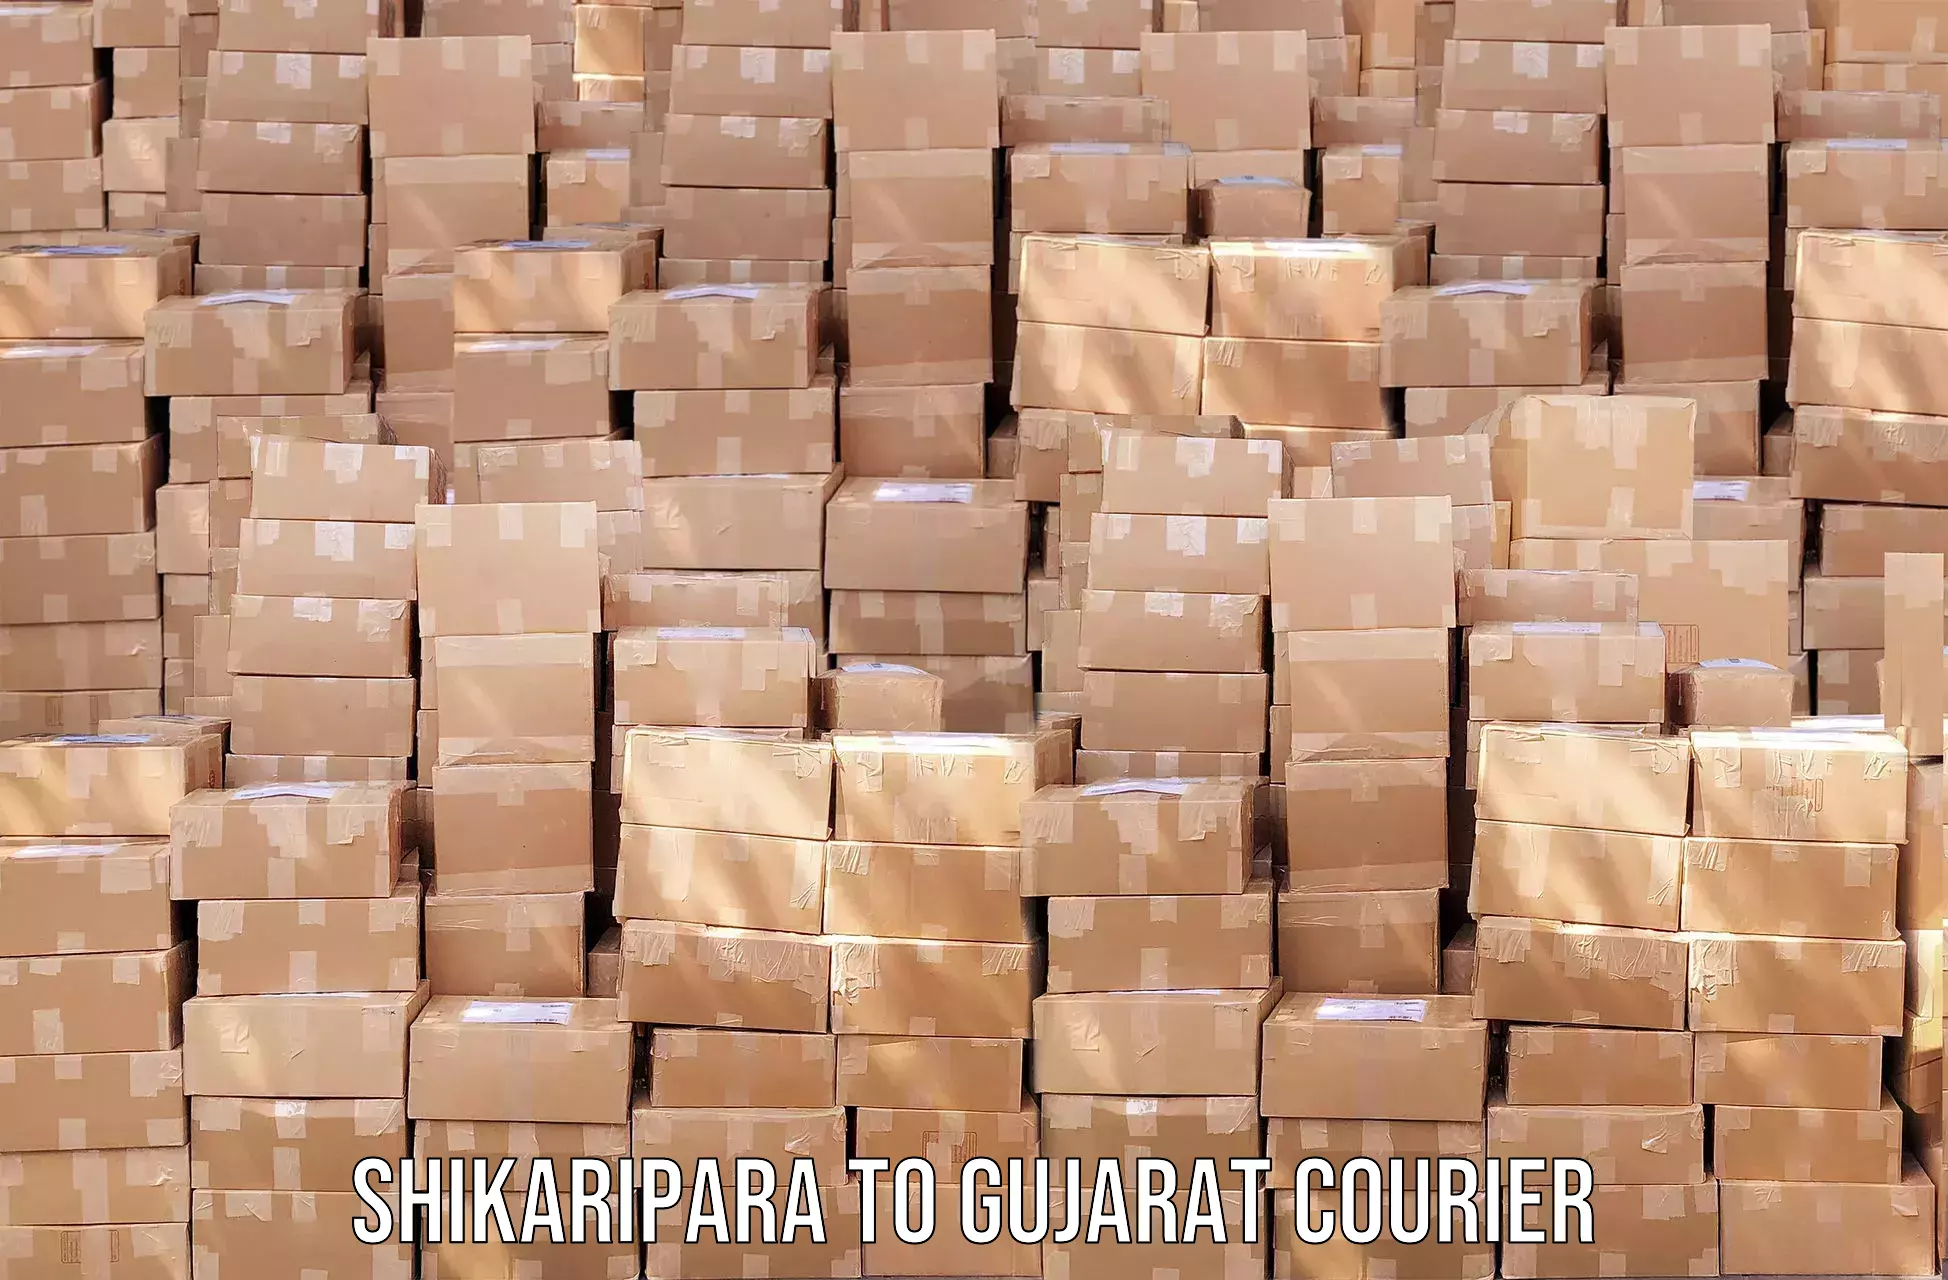 Nationwide shipping capabilities Shikaripara to Dayapar